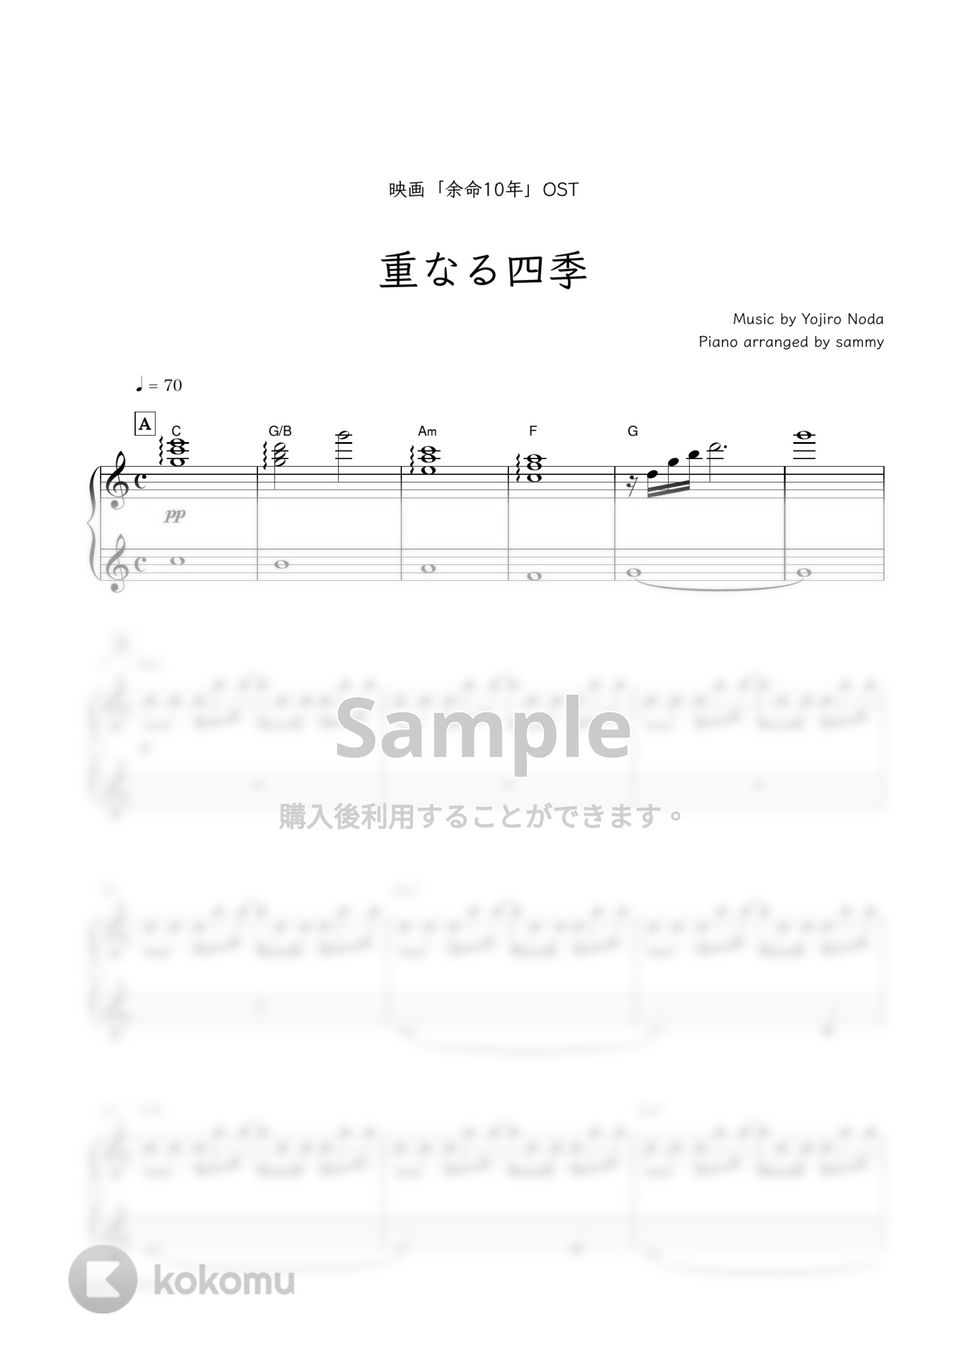 映画「余命10年」OST／RADWIMPS - 重なる四季 by sammy